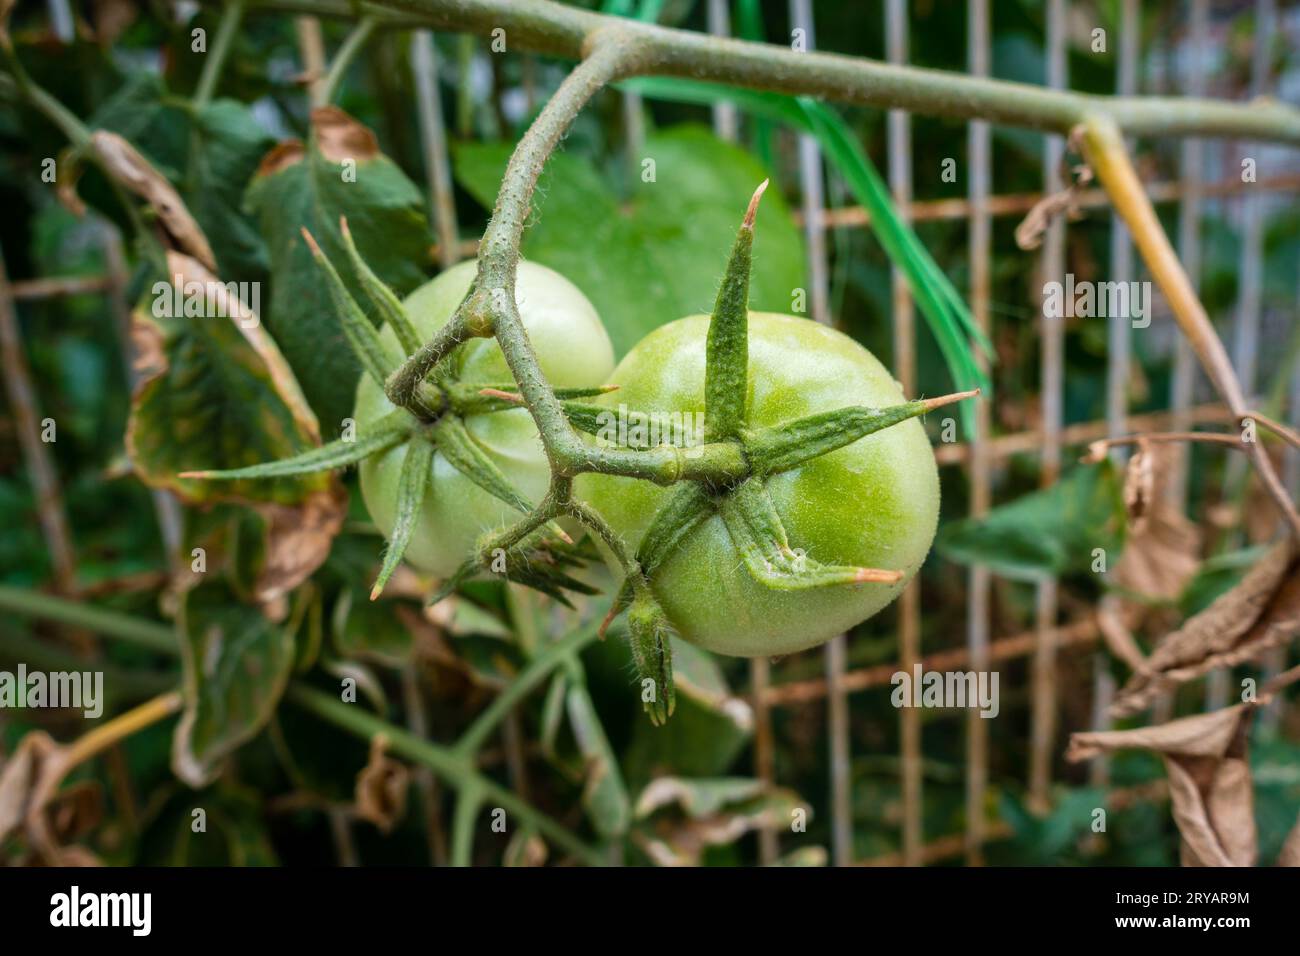 Azienda agricola biologica in India: Pomodori verdi sulla vite. Agricoltura sostenibile che promuove la dieta e i benefici per la salute Foto Stock